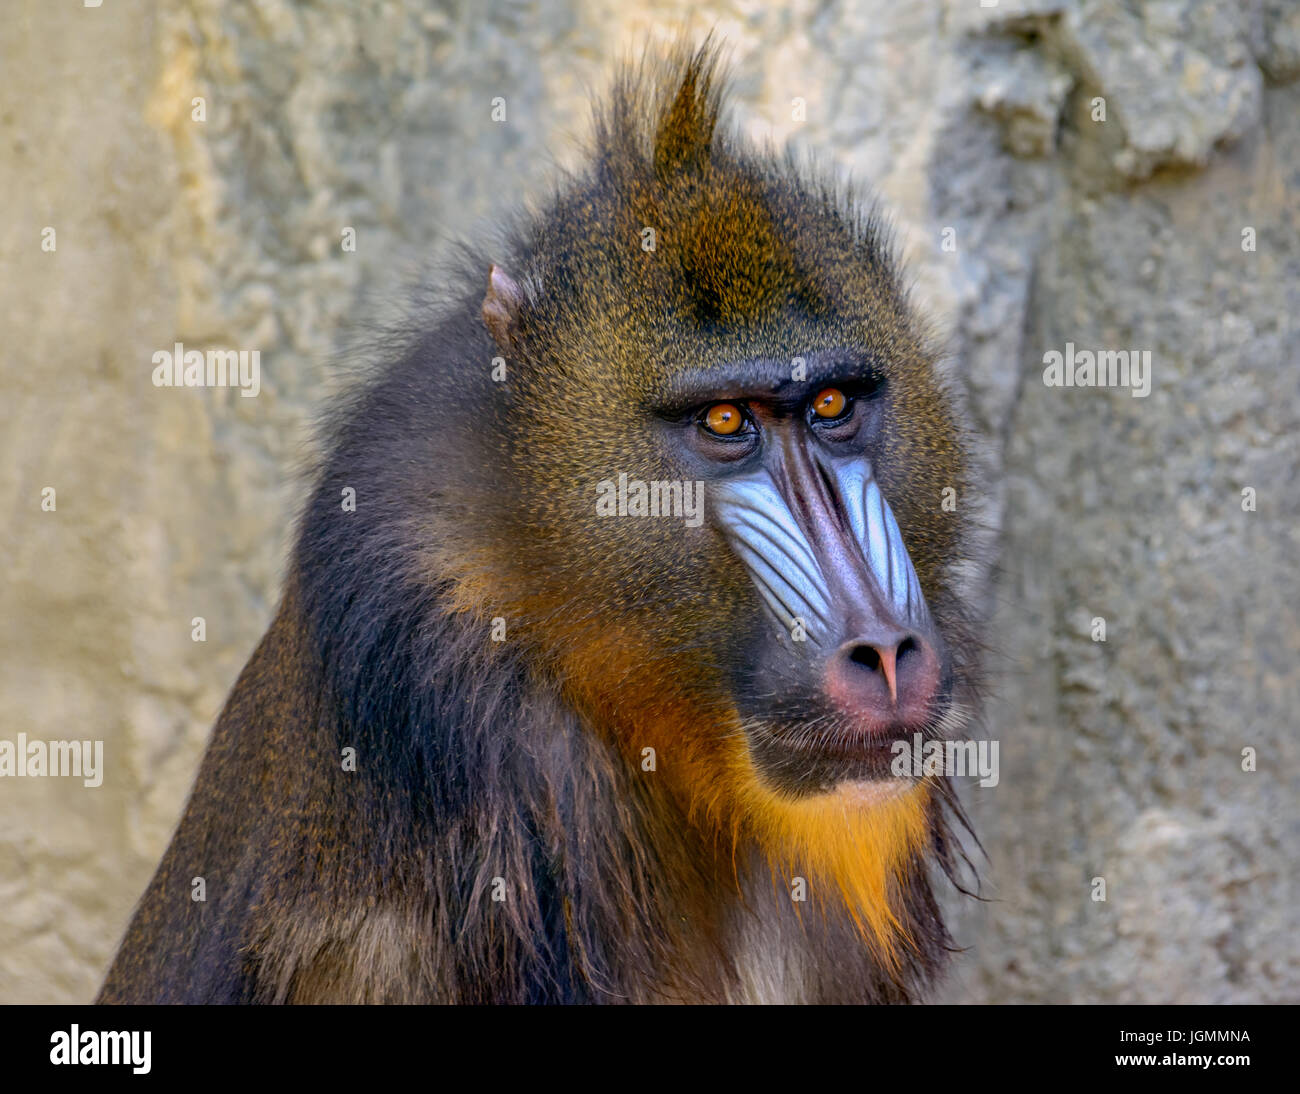 Mandrill (Mandrillus sphinx) Primate di close-up, vivaci occhi, viso espressivo Foto Stock